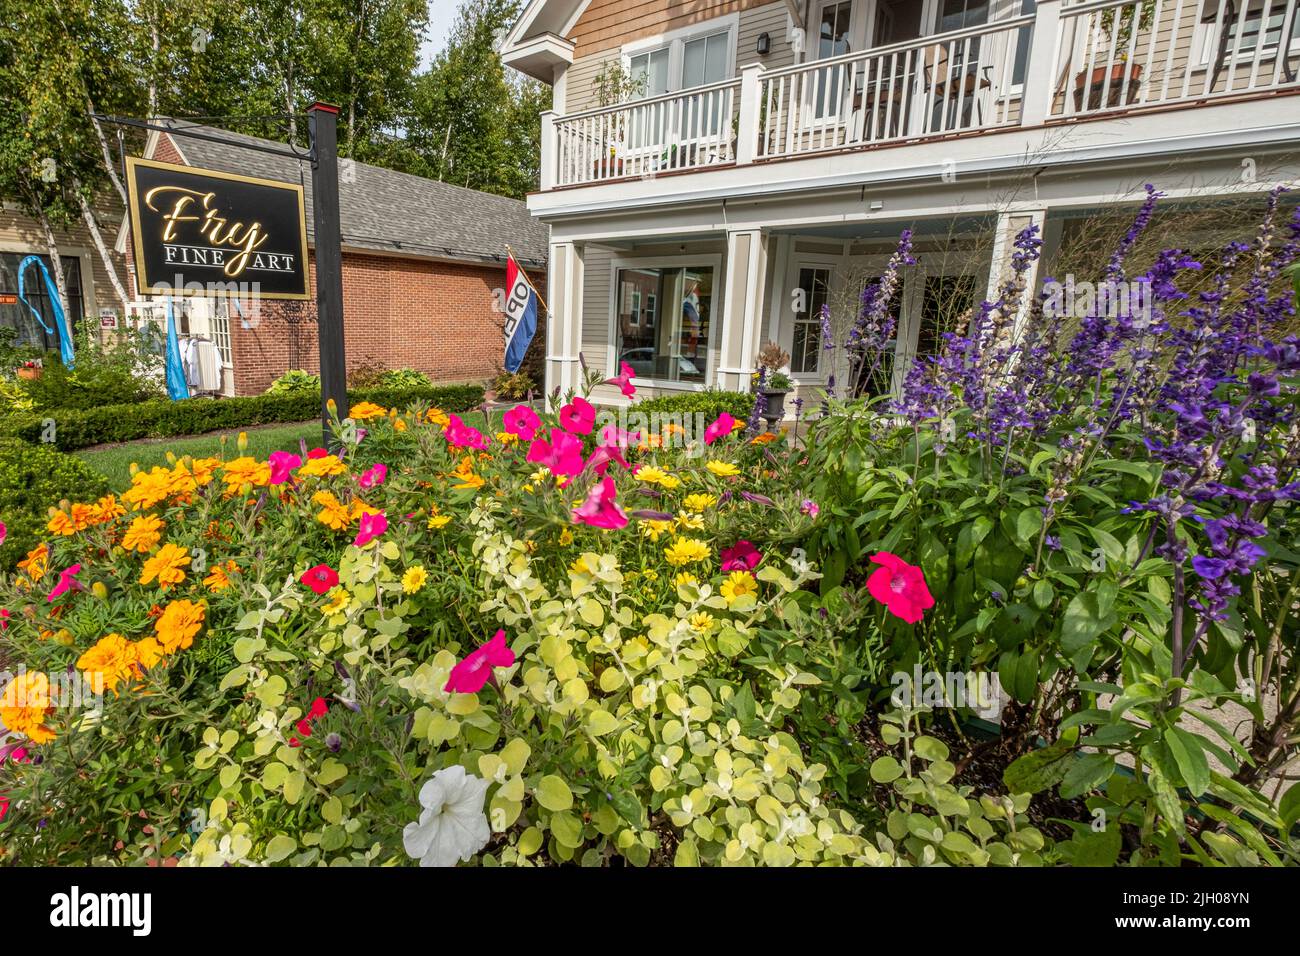 I fiori adornano la parte anteriore del commercio di fine arte di Fry a Peterborough, New Hampshire Foto Stock